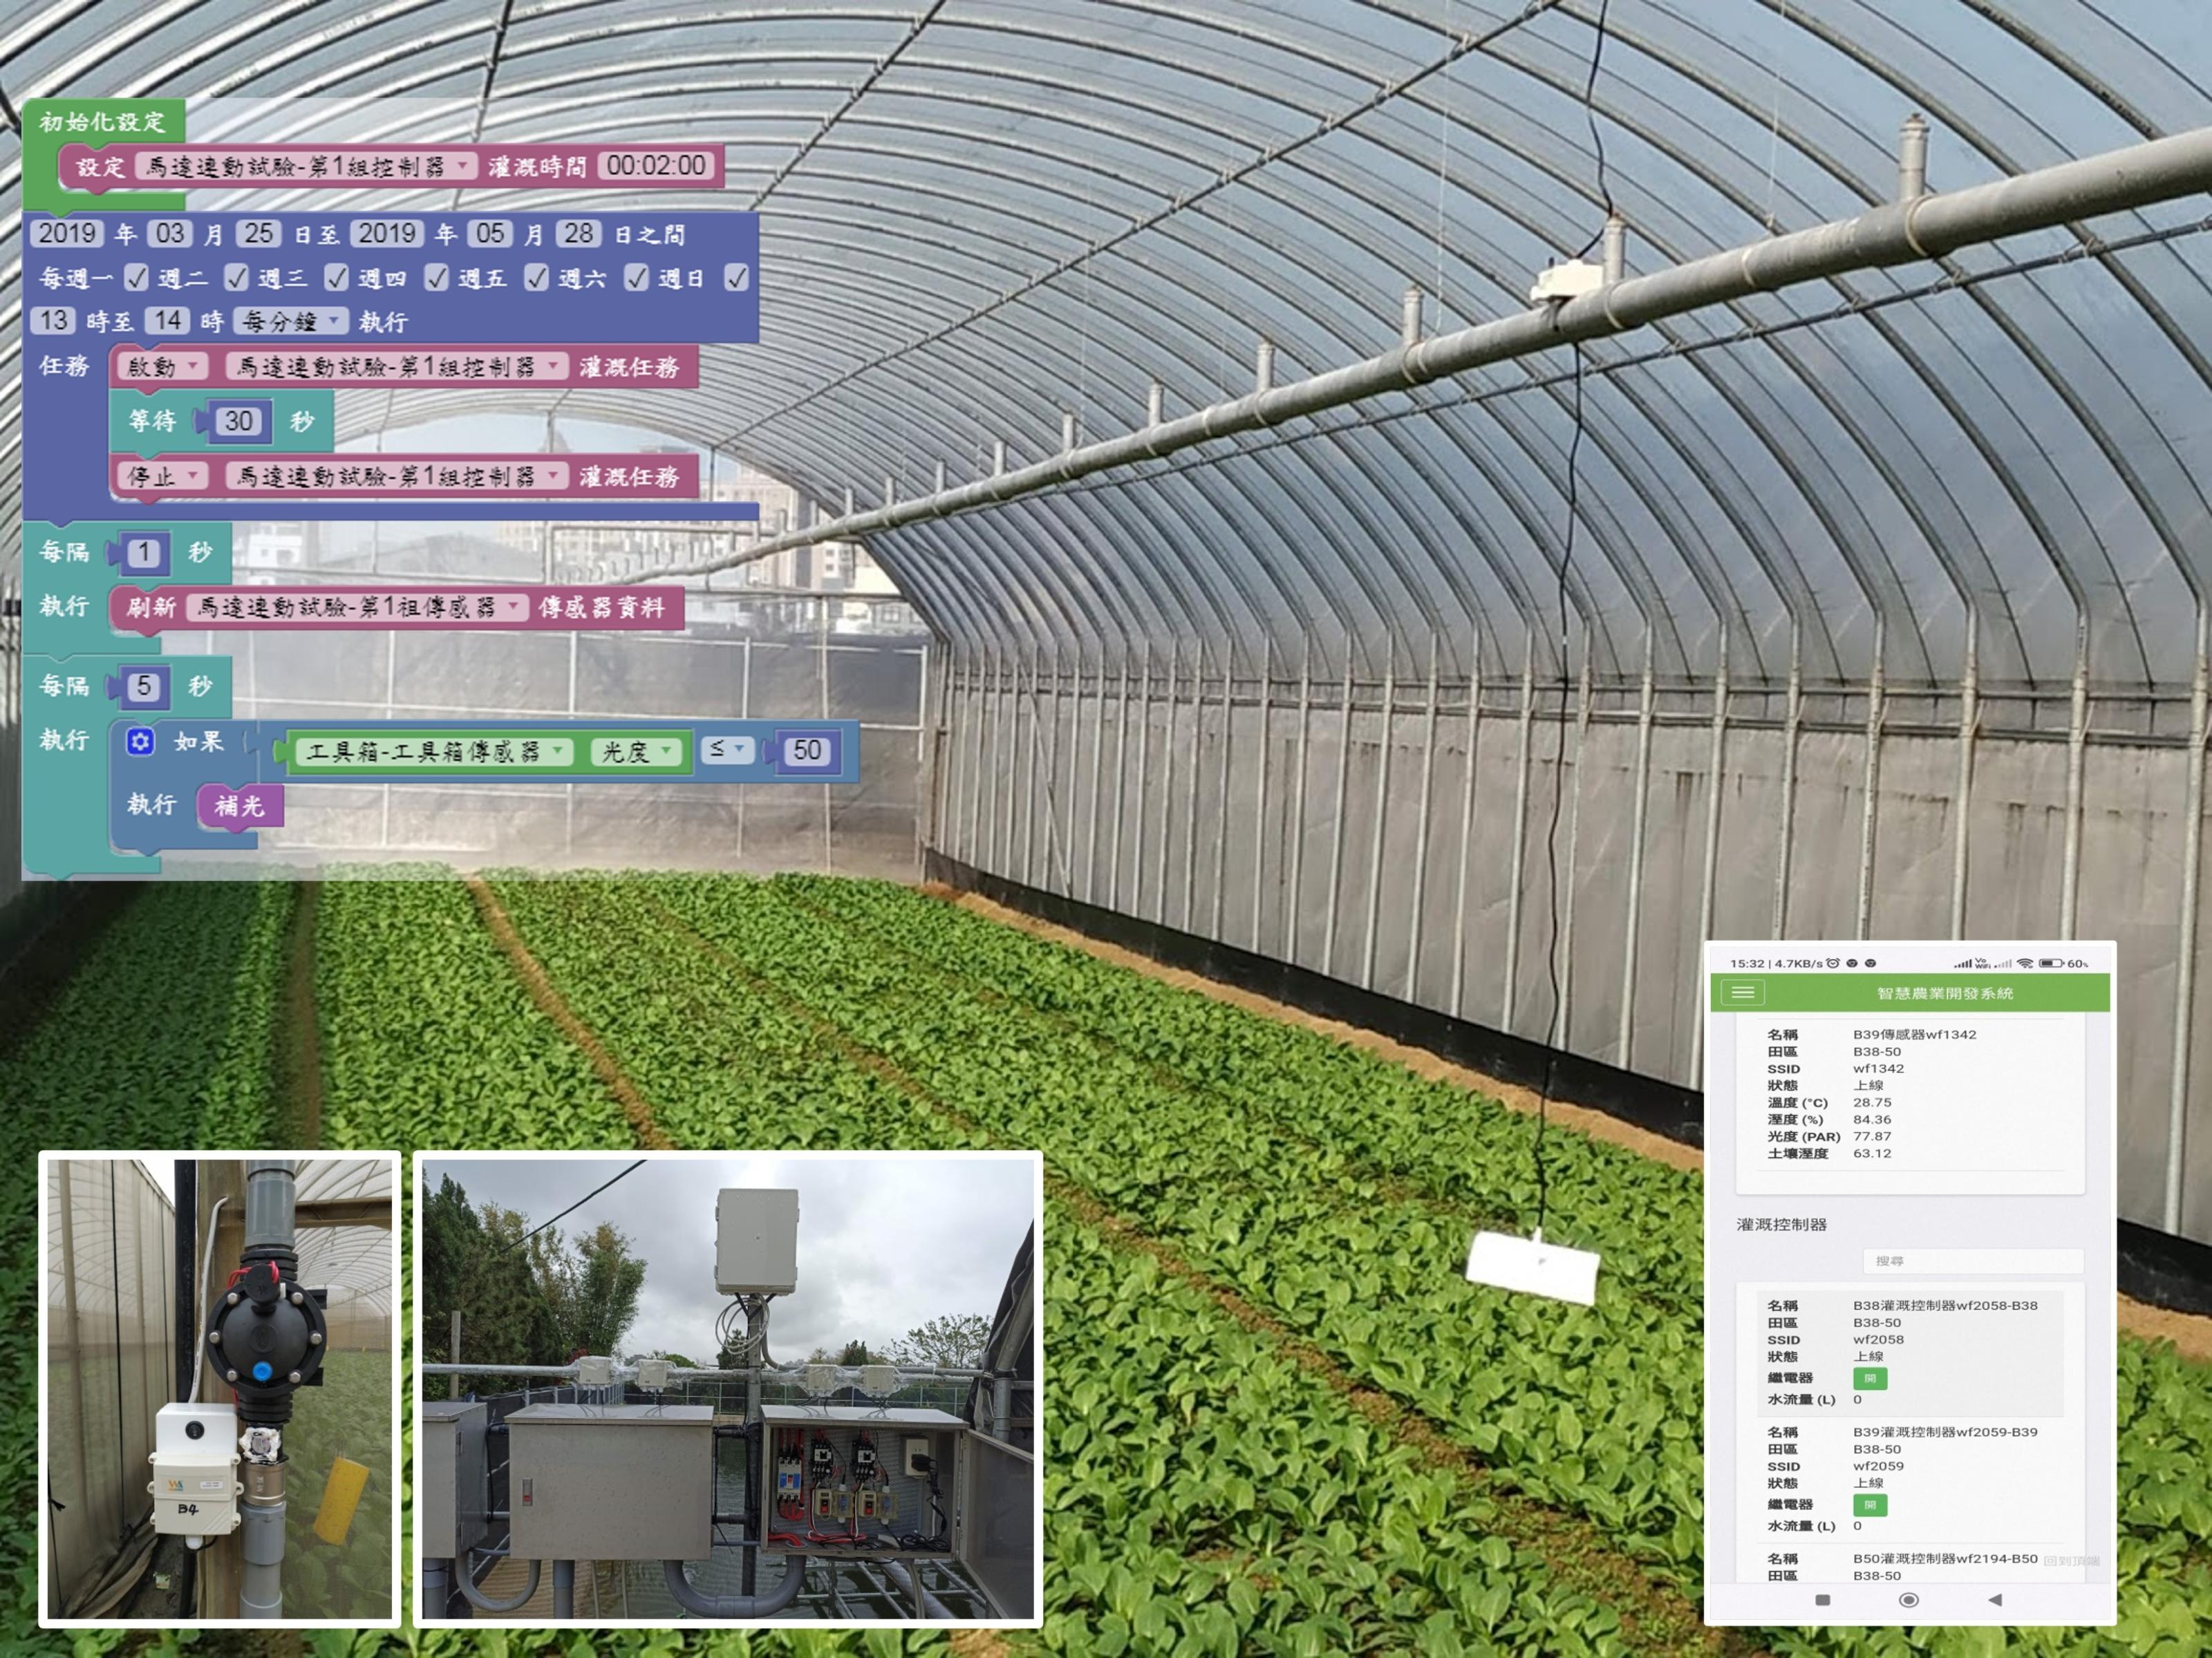 圖5，觀摩會展示設施葉菜智慧灌溉系統及操作